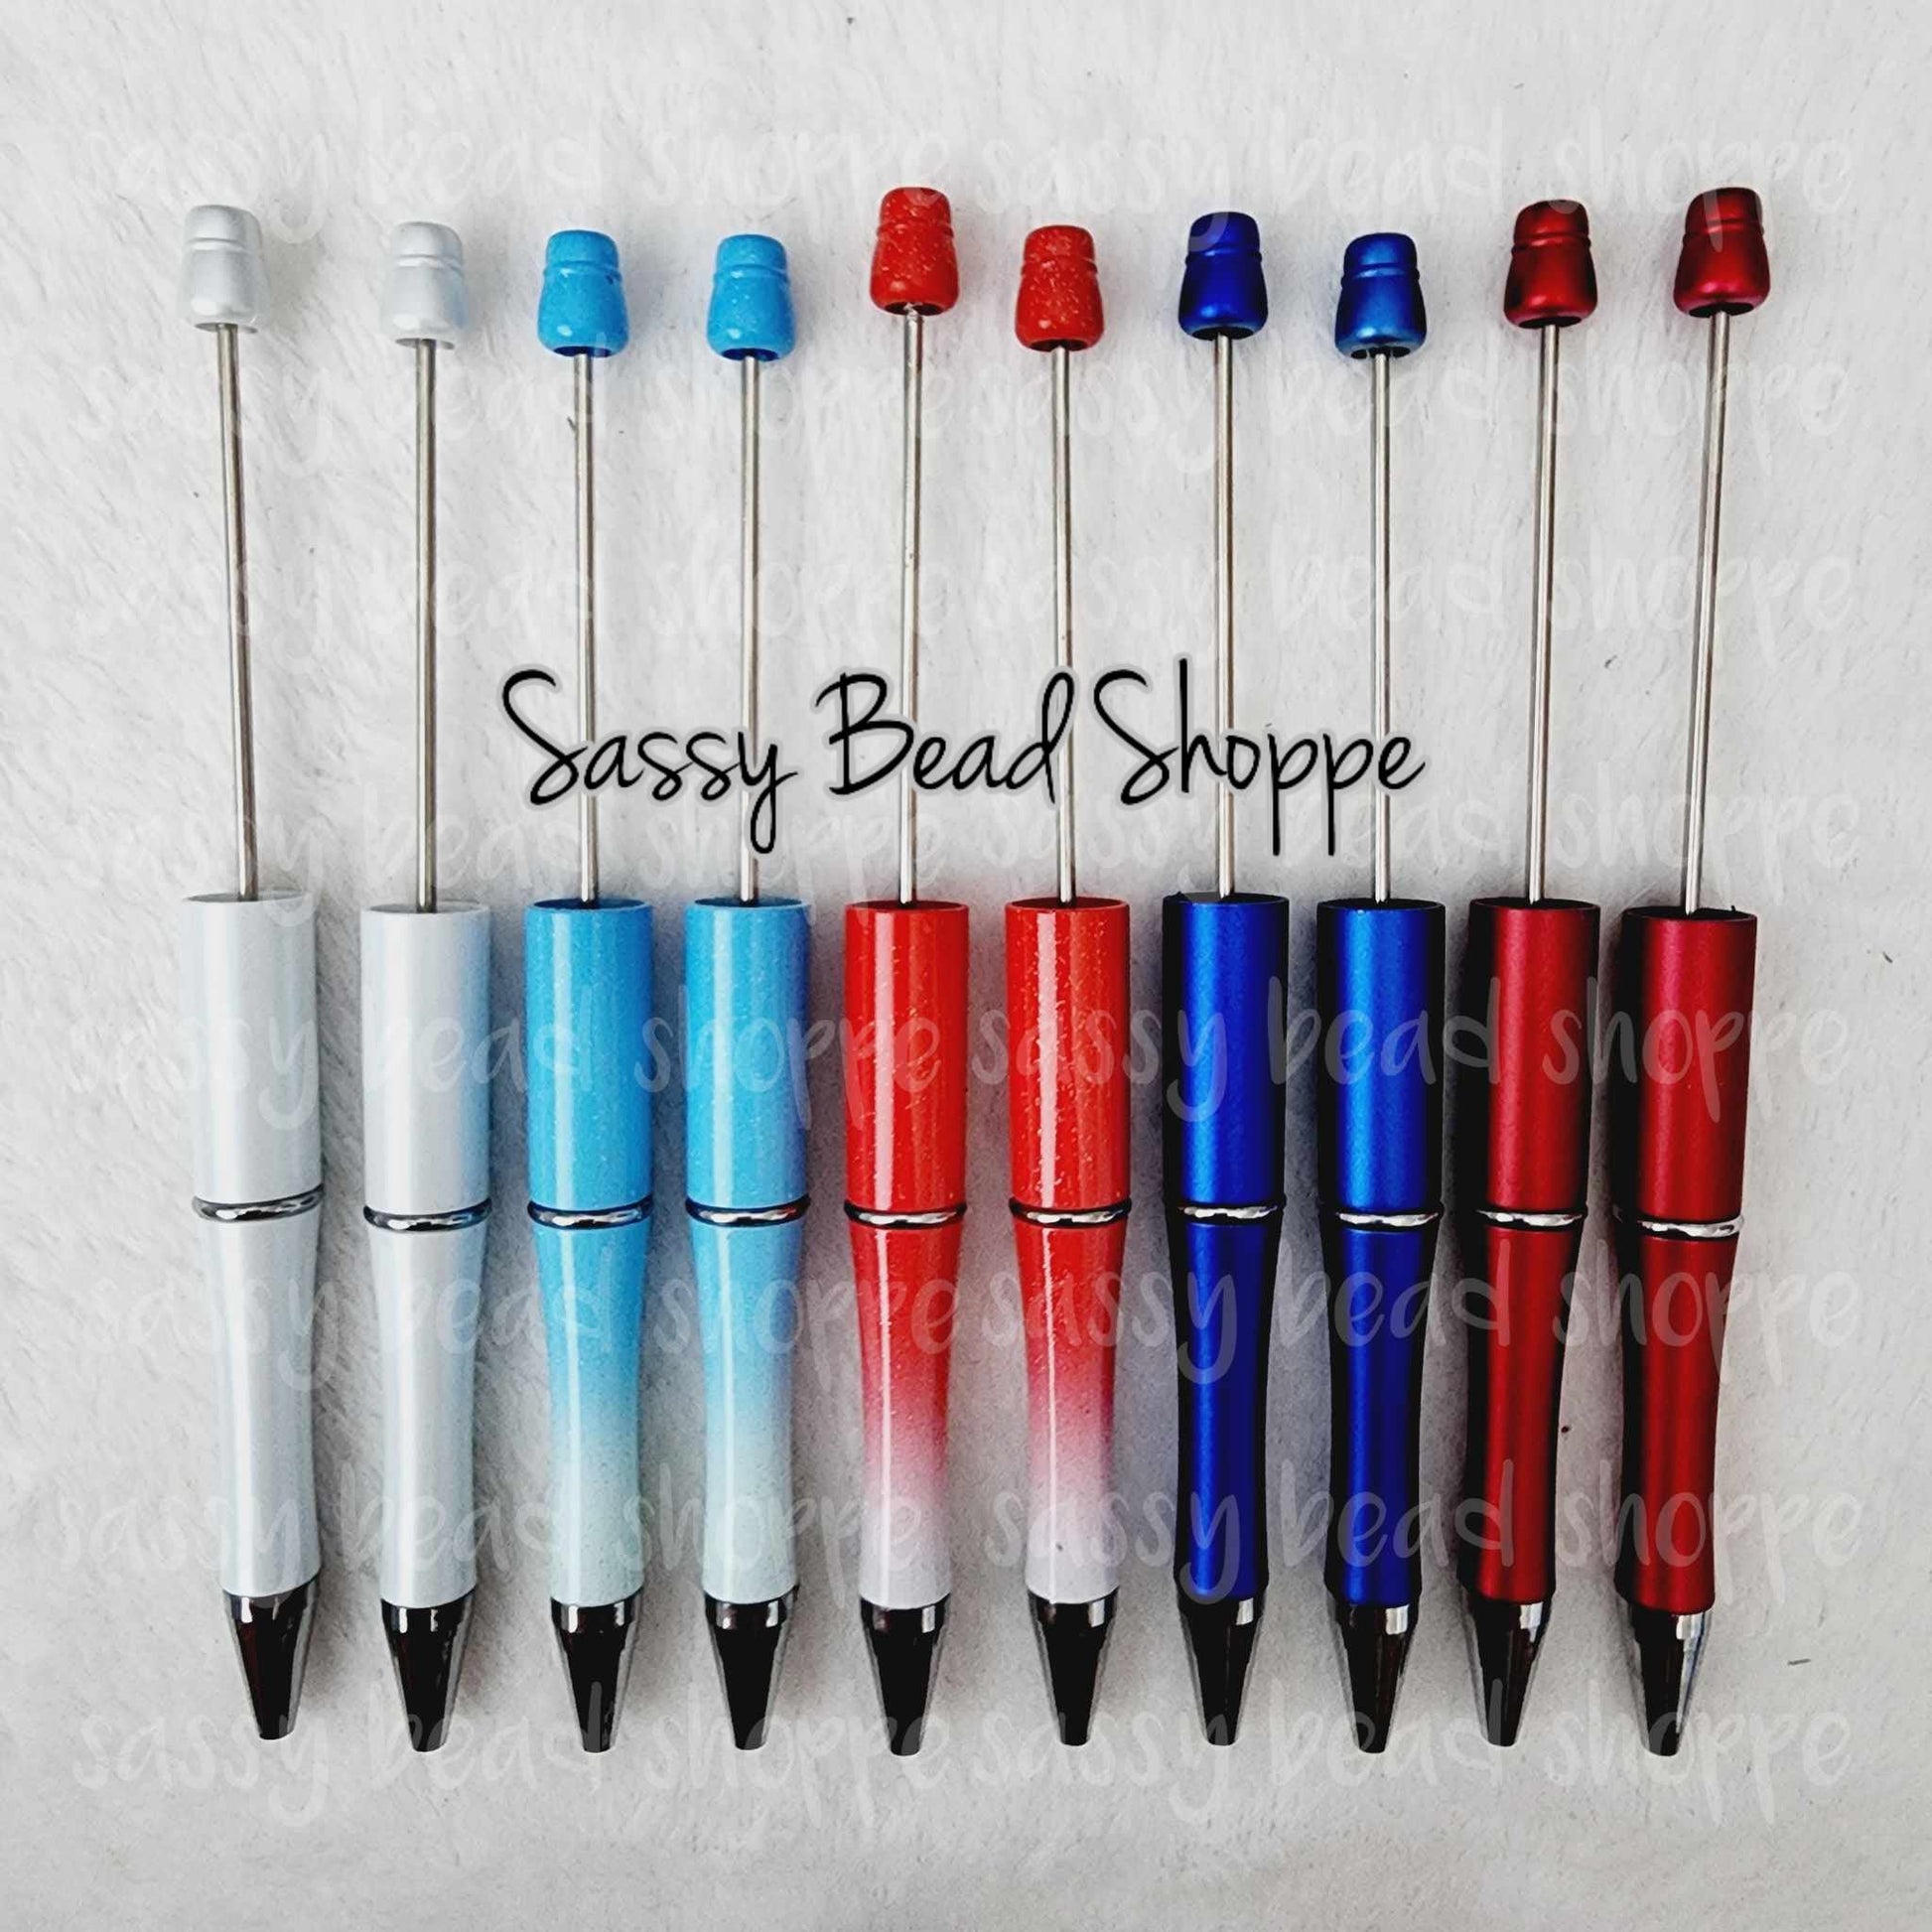 Sassy Bead Shoppe Red White & True Pen Pack Pack of 10